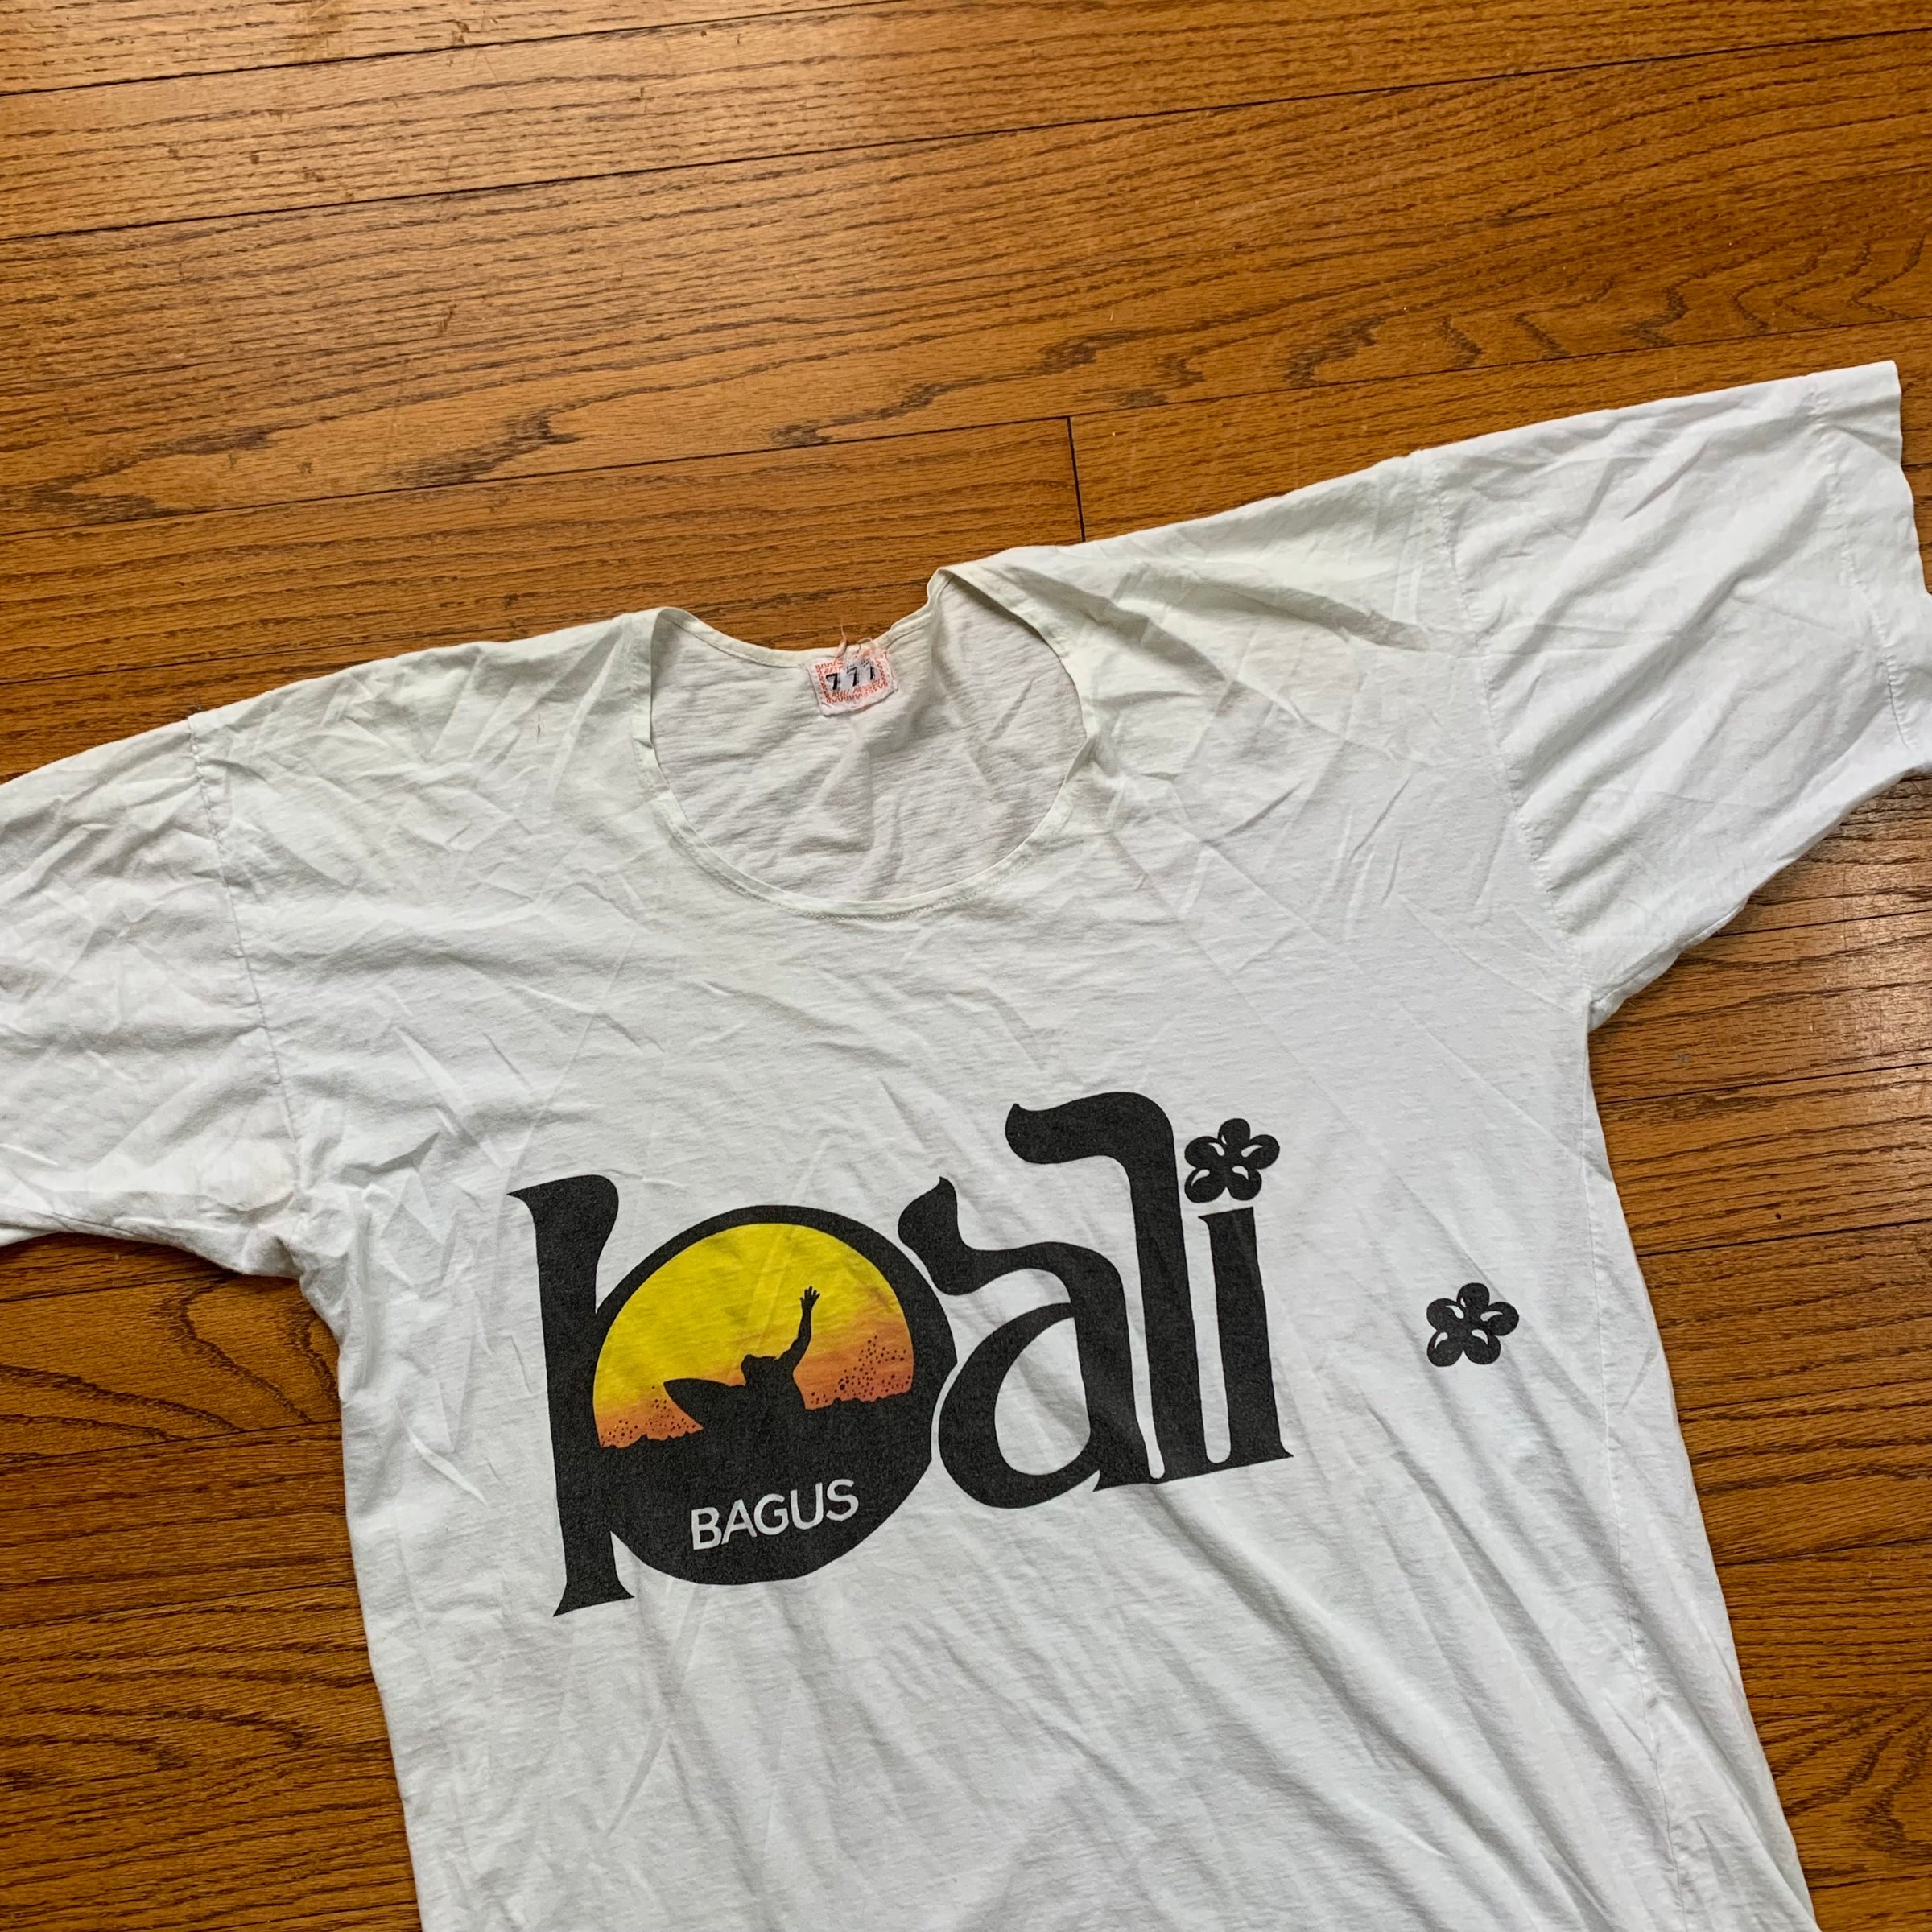 1970's Bali Souvenir T-Shirt M/L